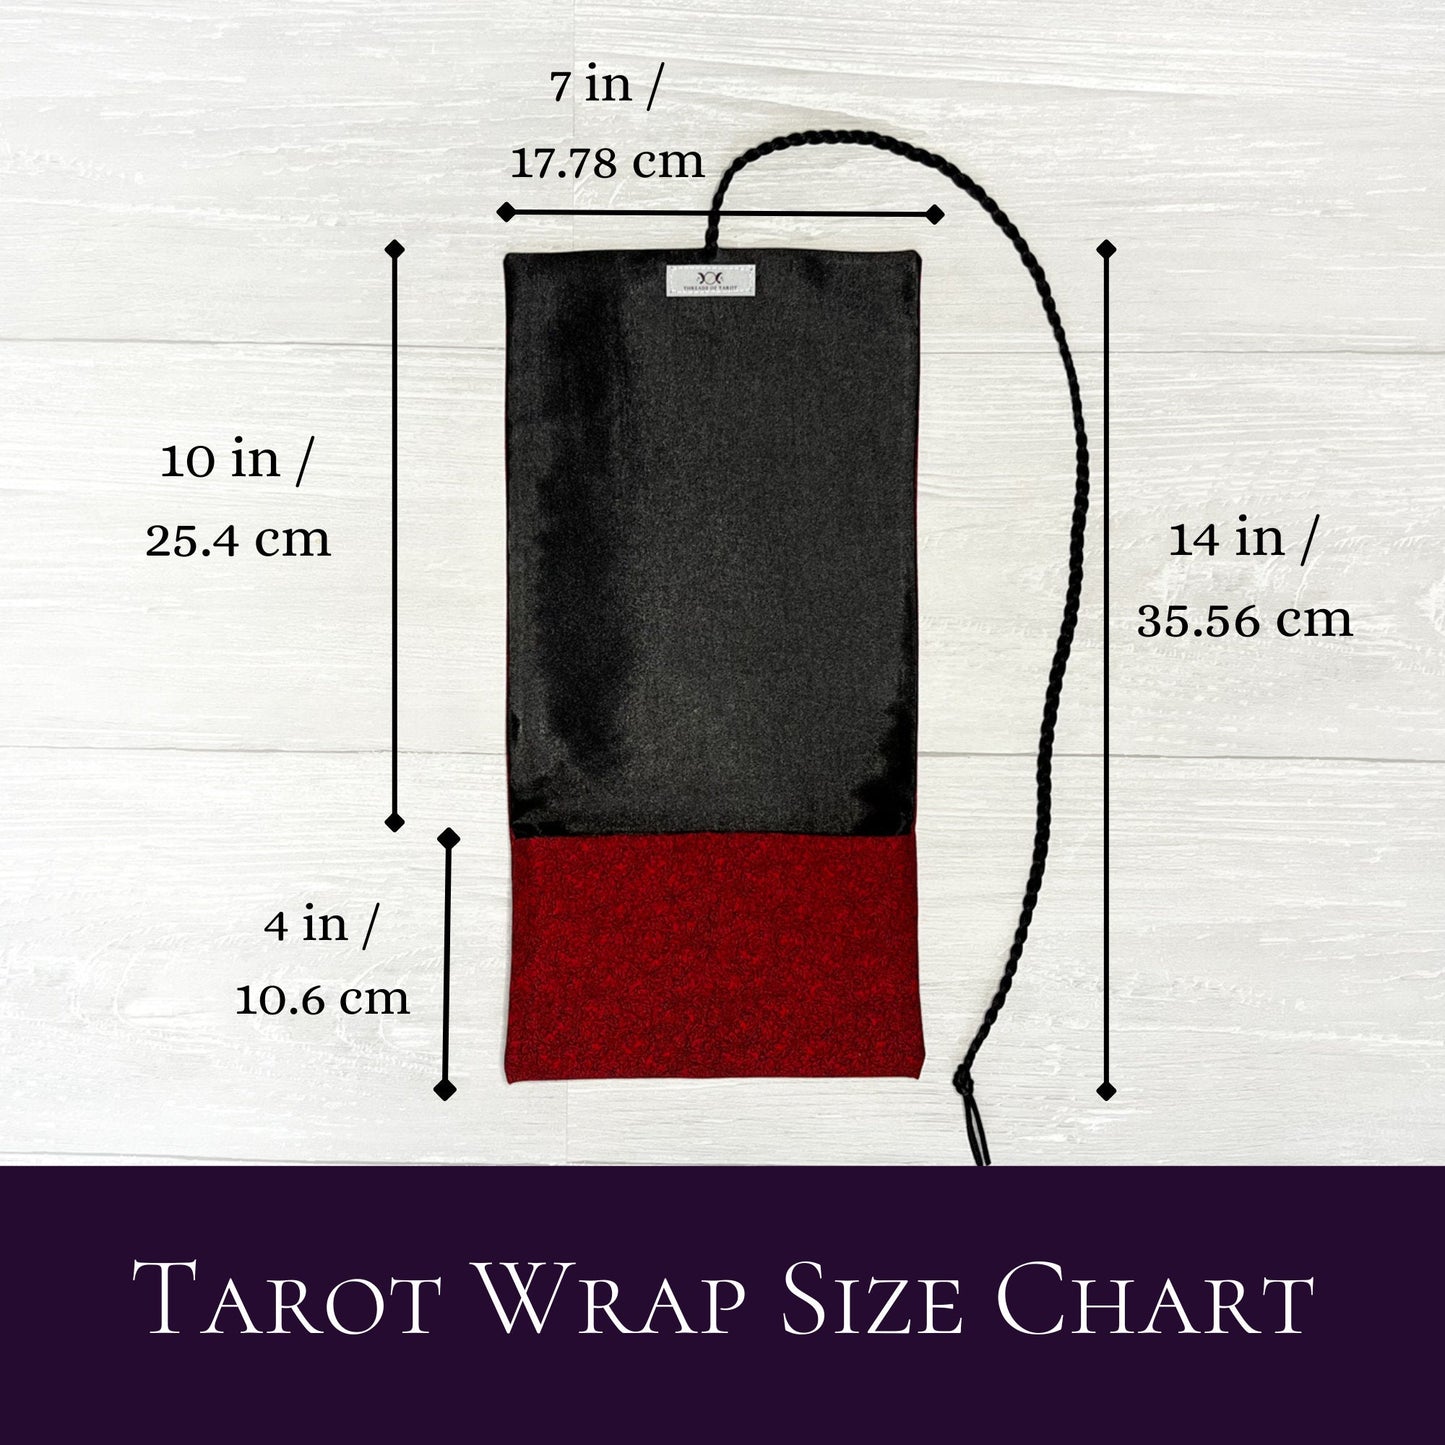 Red Floral Tarot Wrap Pouch, Tarot Deck Pouch, Tarot Altar Supplies & Accessories, Tarot Card Holder, Divination Pagan Tarot Reader Gift